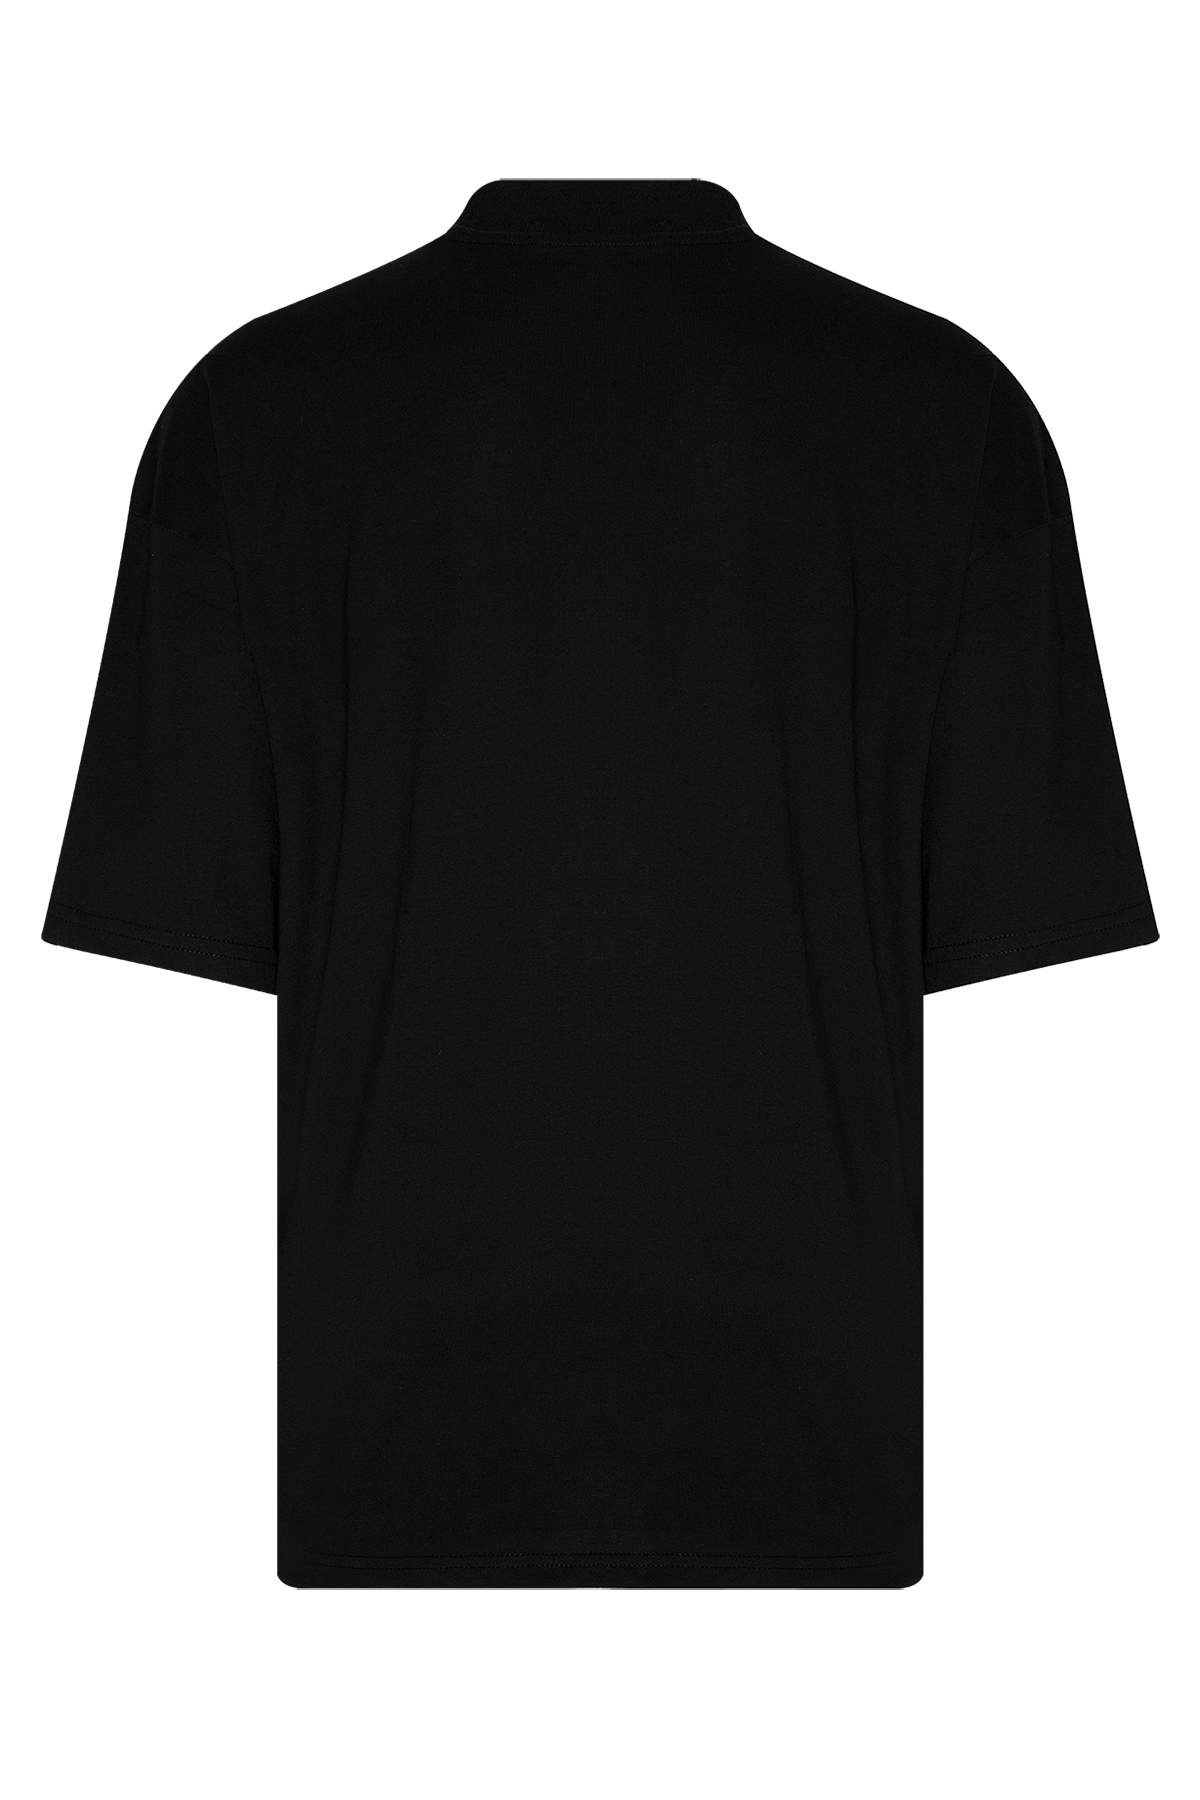 Siyah Ribanalı & Yazı Detaylı Oversize T-Shirt 2YXE2-45987-02